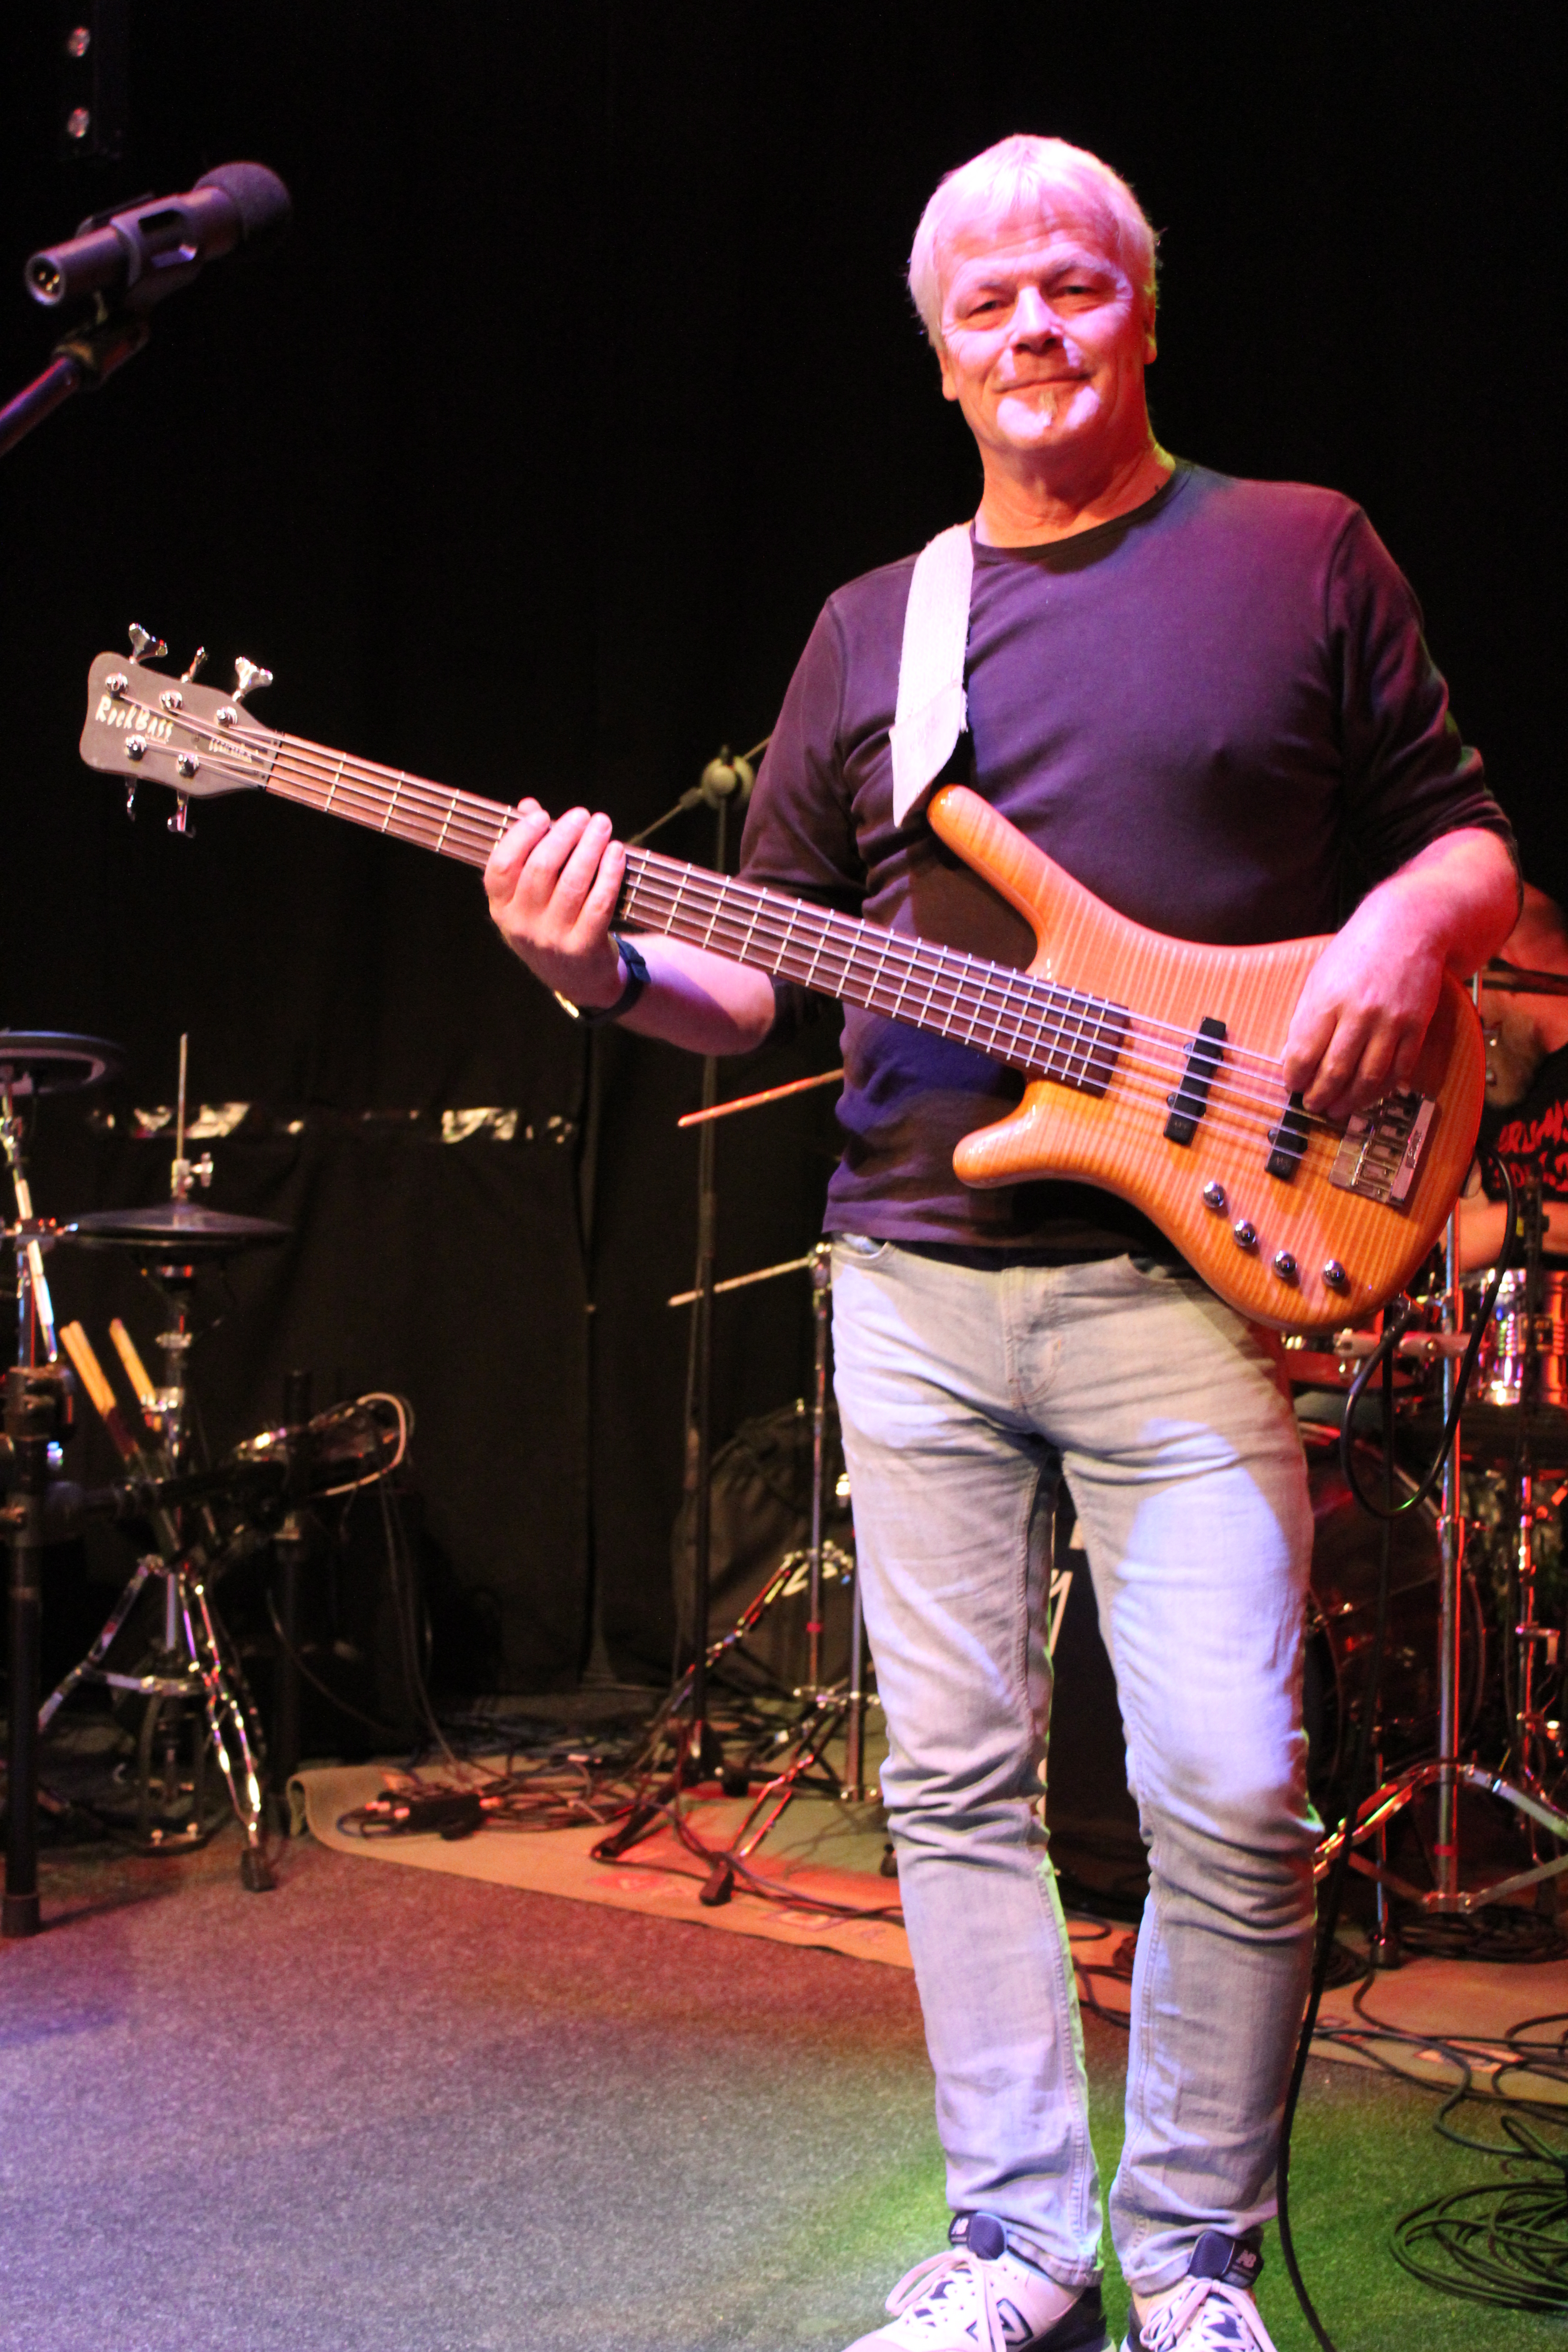 Axel Plankenhorn am Bass